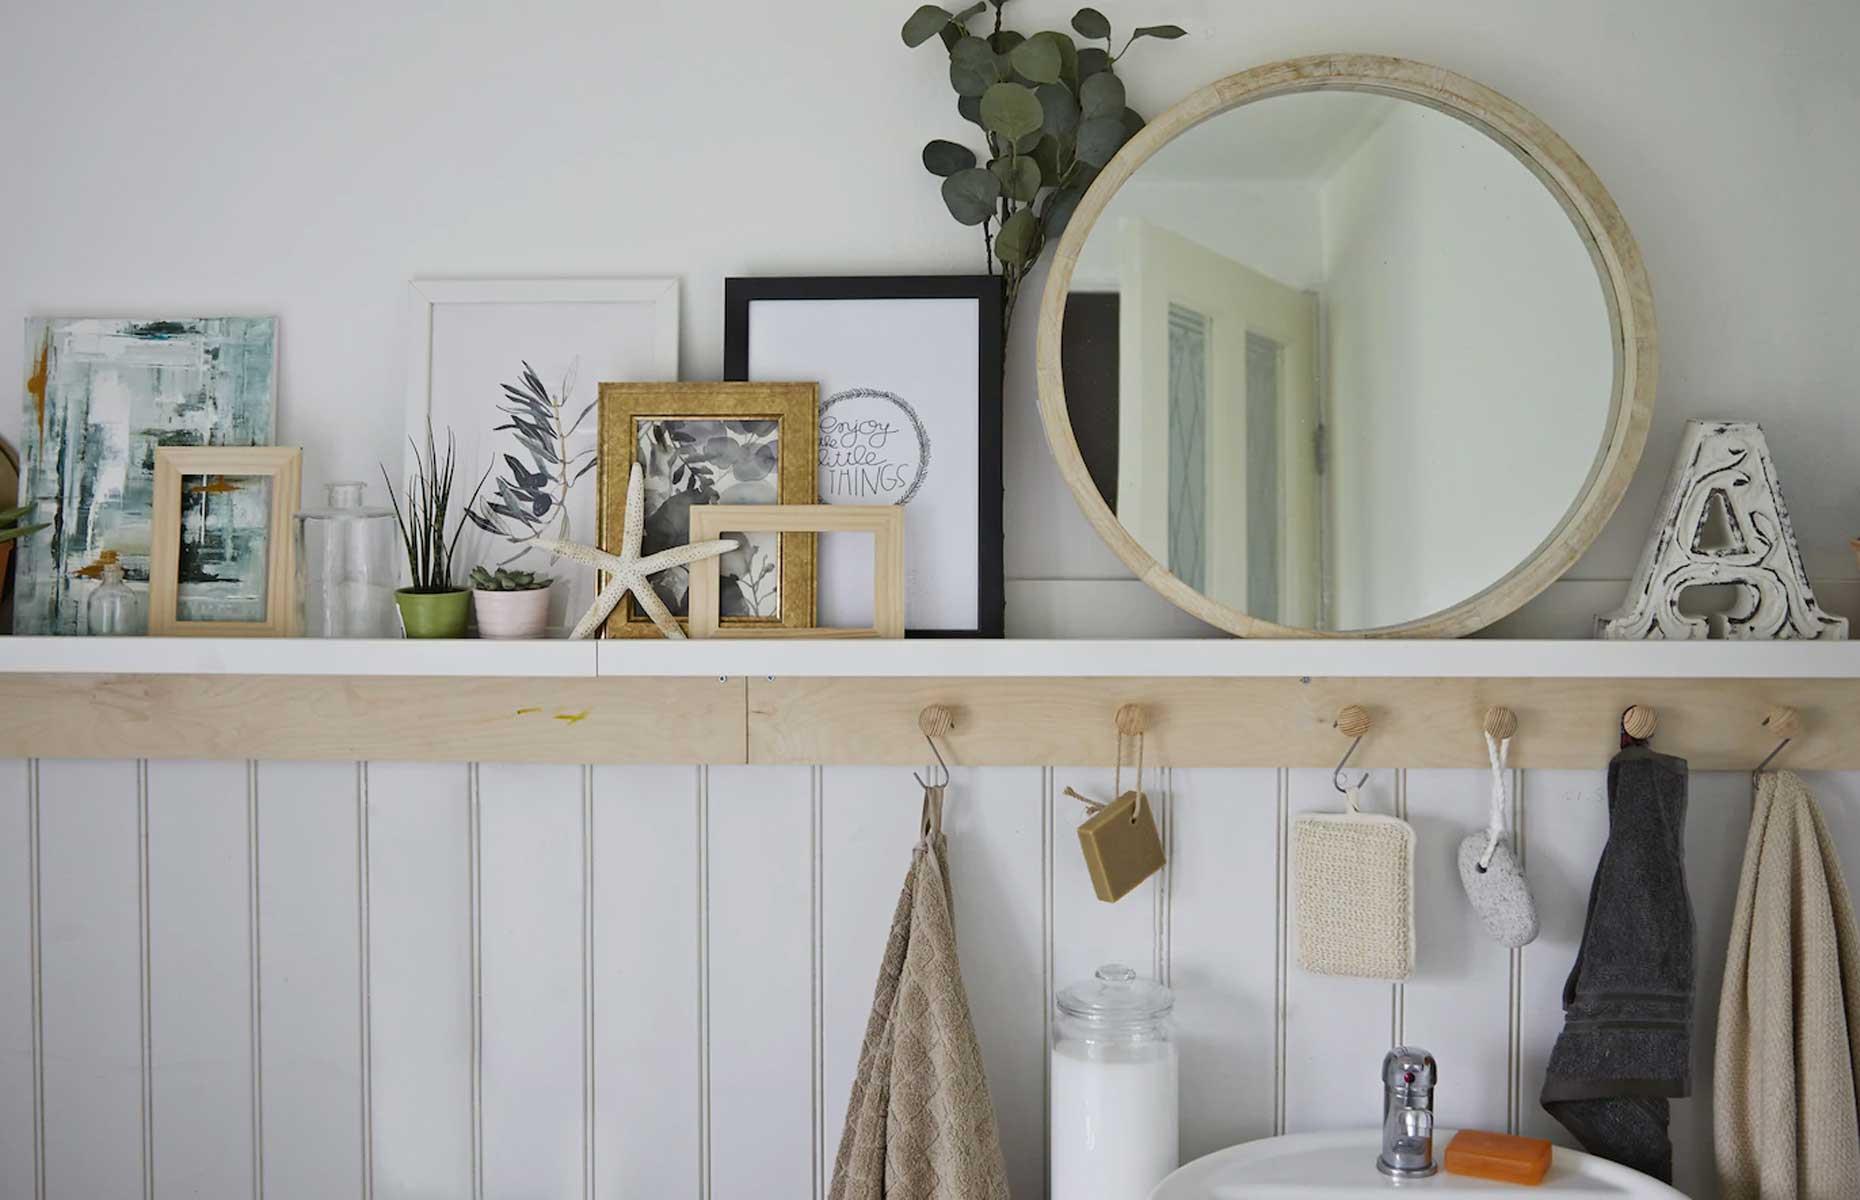 Secrets of a stylist: The bathroom shelf display - IKEA